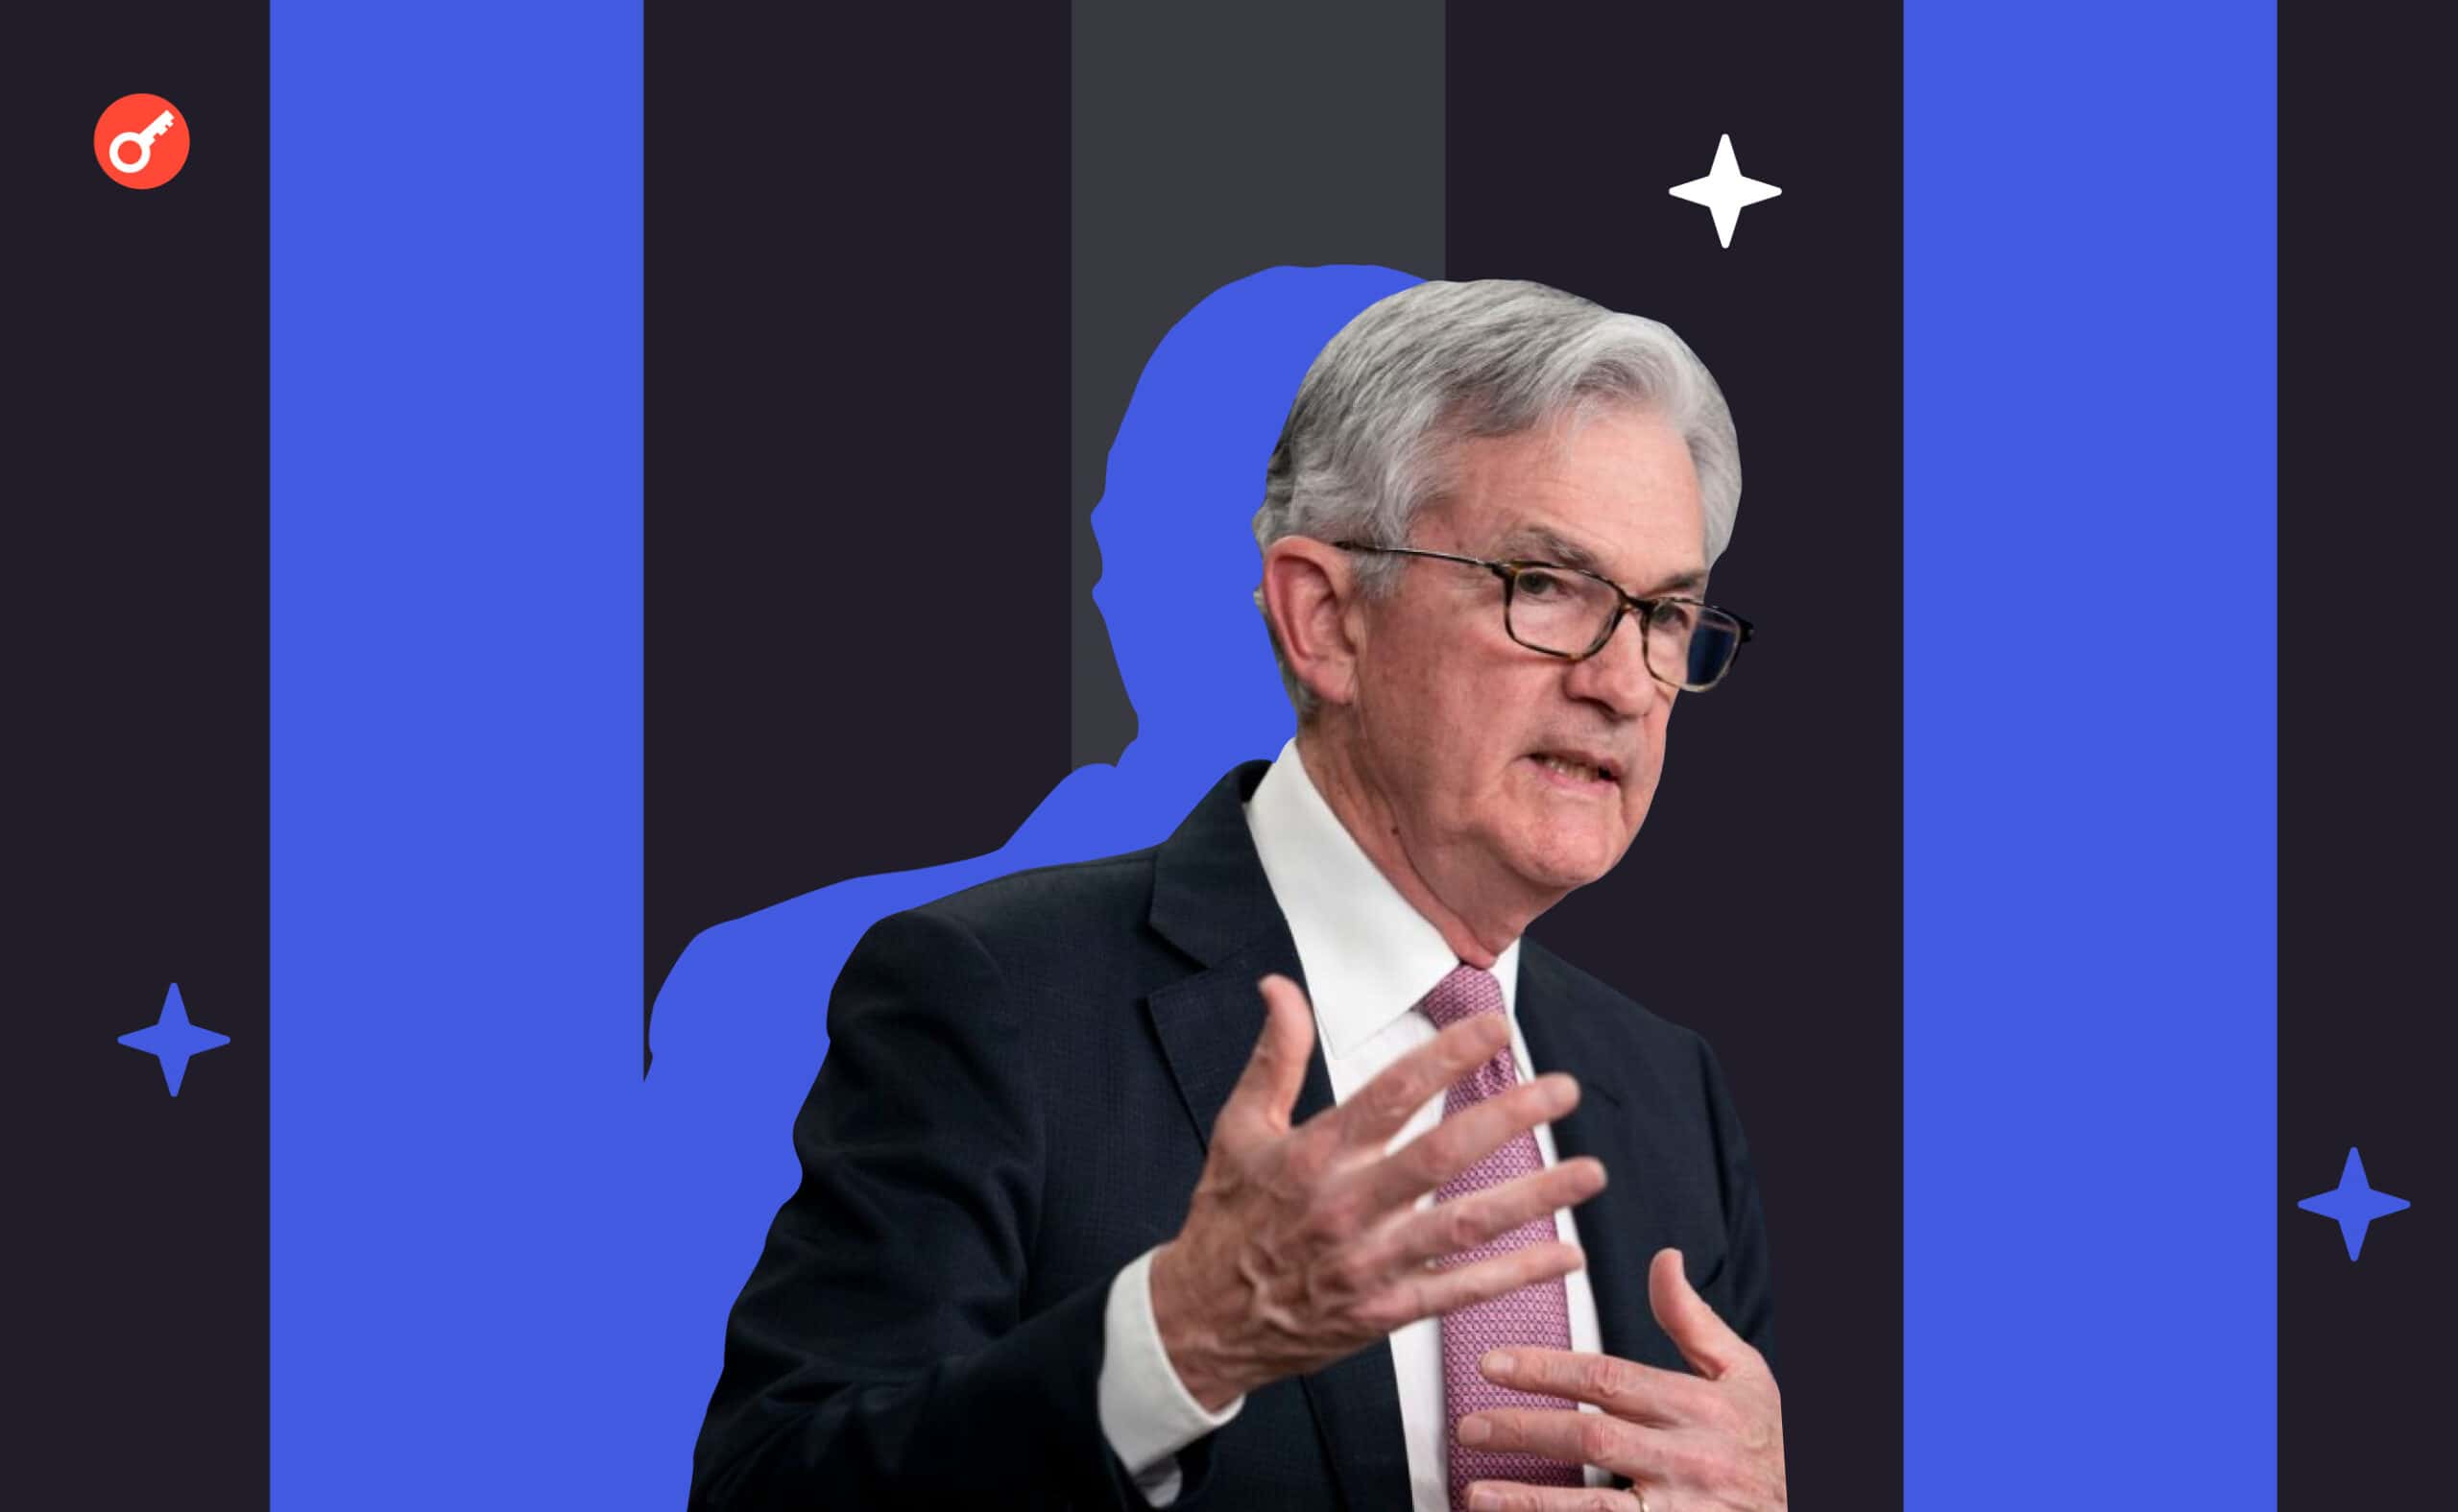 Виступ Пауелла на FOMC: про банківську систему, «помірну» рецесію і подальший курс ФРС. Головний колаж новини.